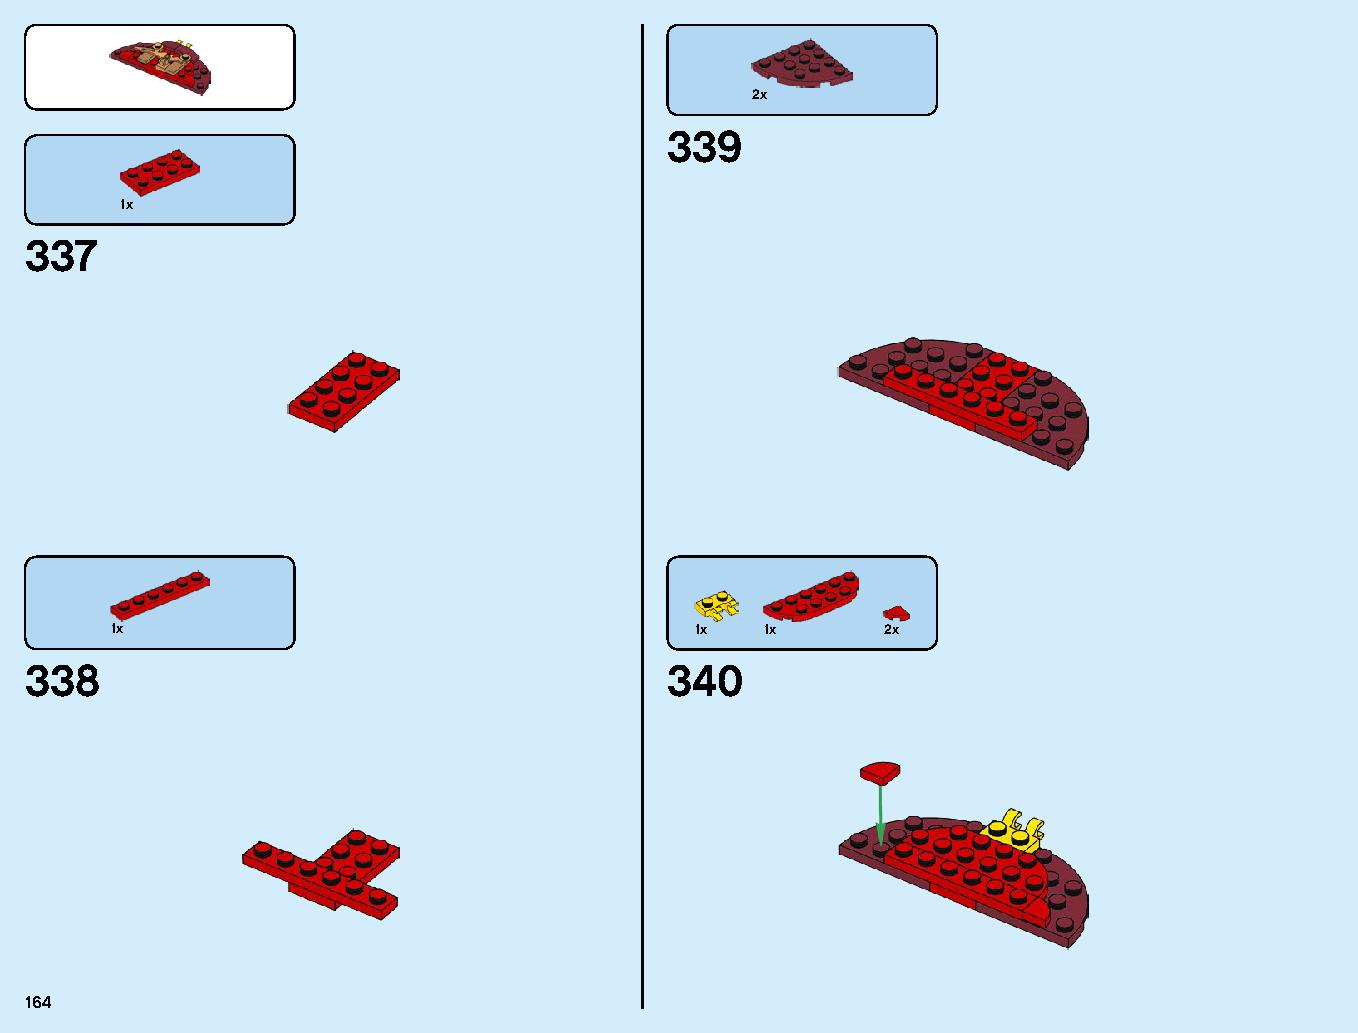 ニンジャ道場 70670 レゴの商品情報 レゴの説明書・組立方法 164 page